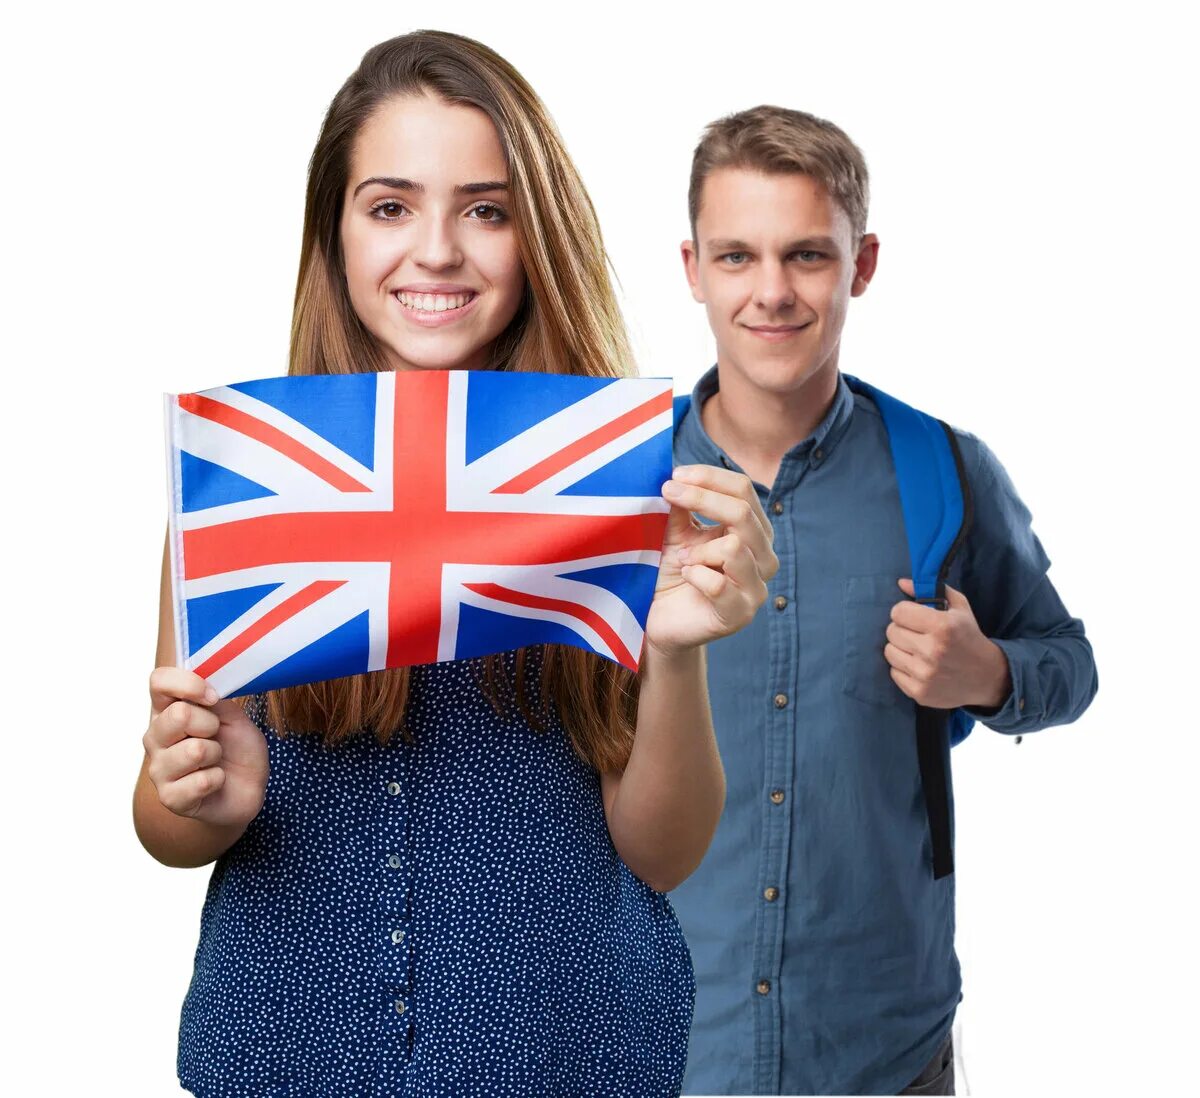 Английский для детей и взрослых. Разговорный английский для подростков. Курсы английского. Ребенок с британским флагом.